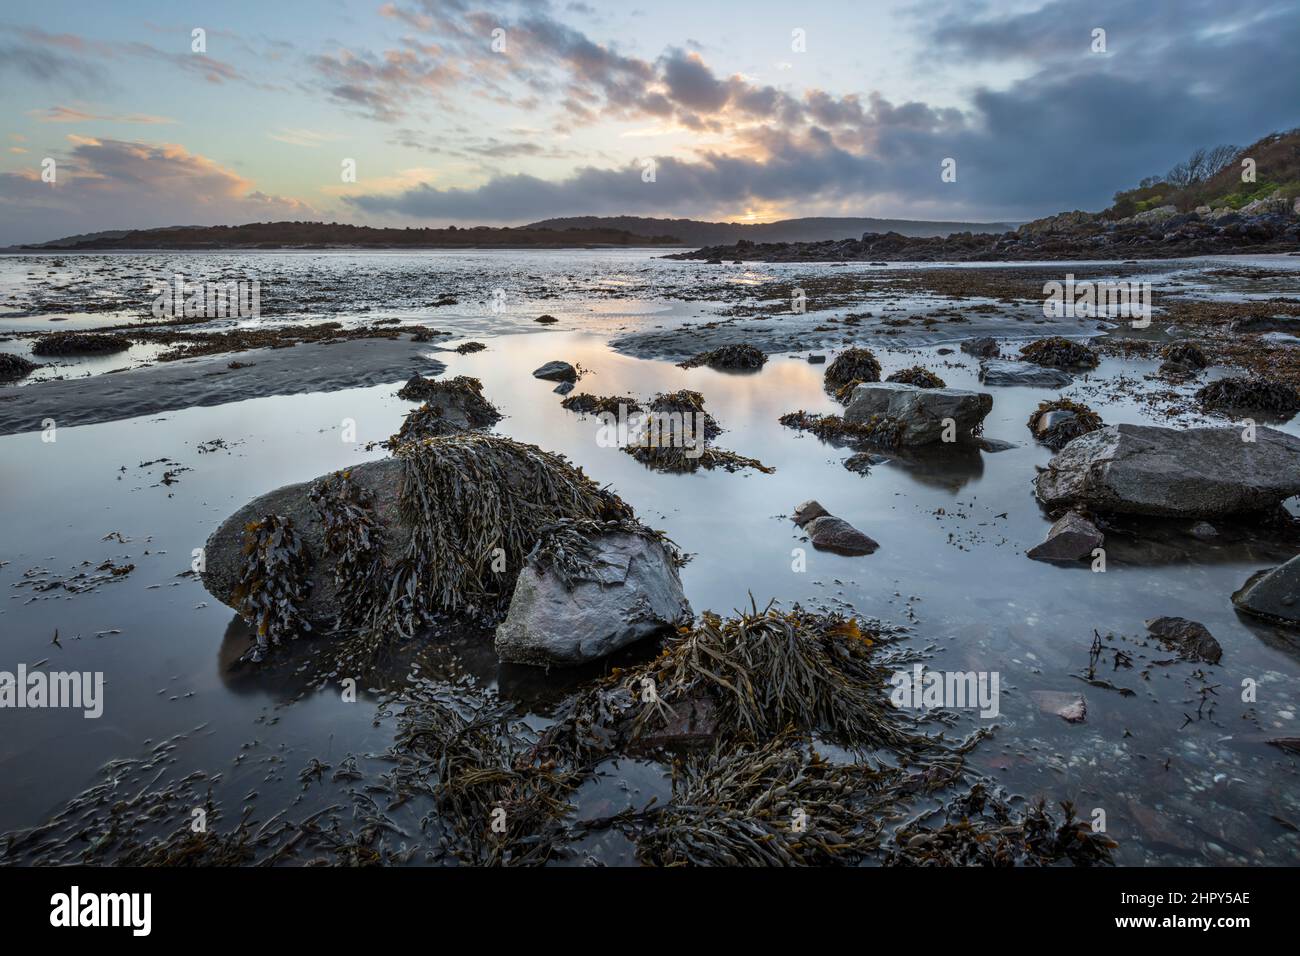 Rochers couverts d'algues au coucher du soleil à marée basse, Rockcliffe, Dalbeattie, Dumfries et Galloway, Écosse, Royaume-Uni, Europe Banque D'Images